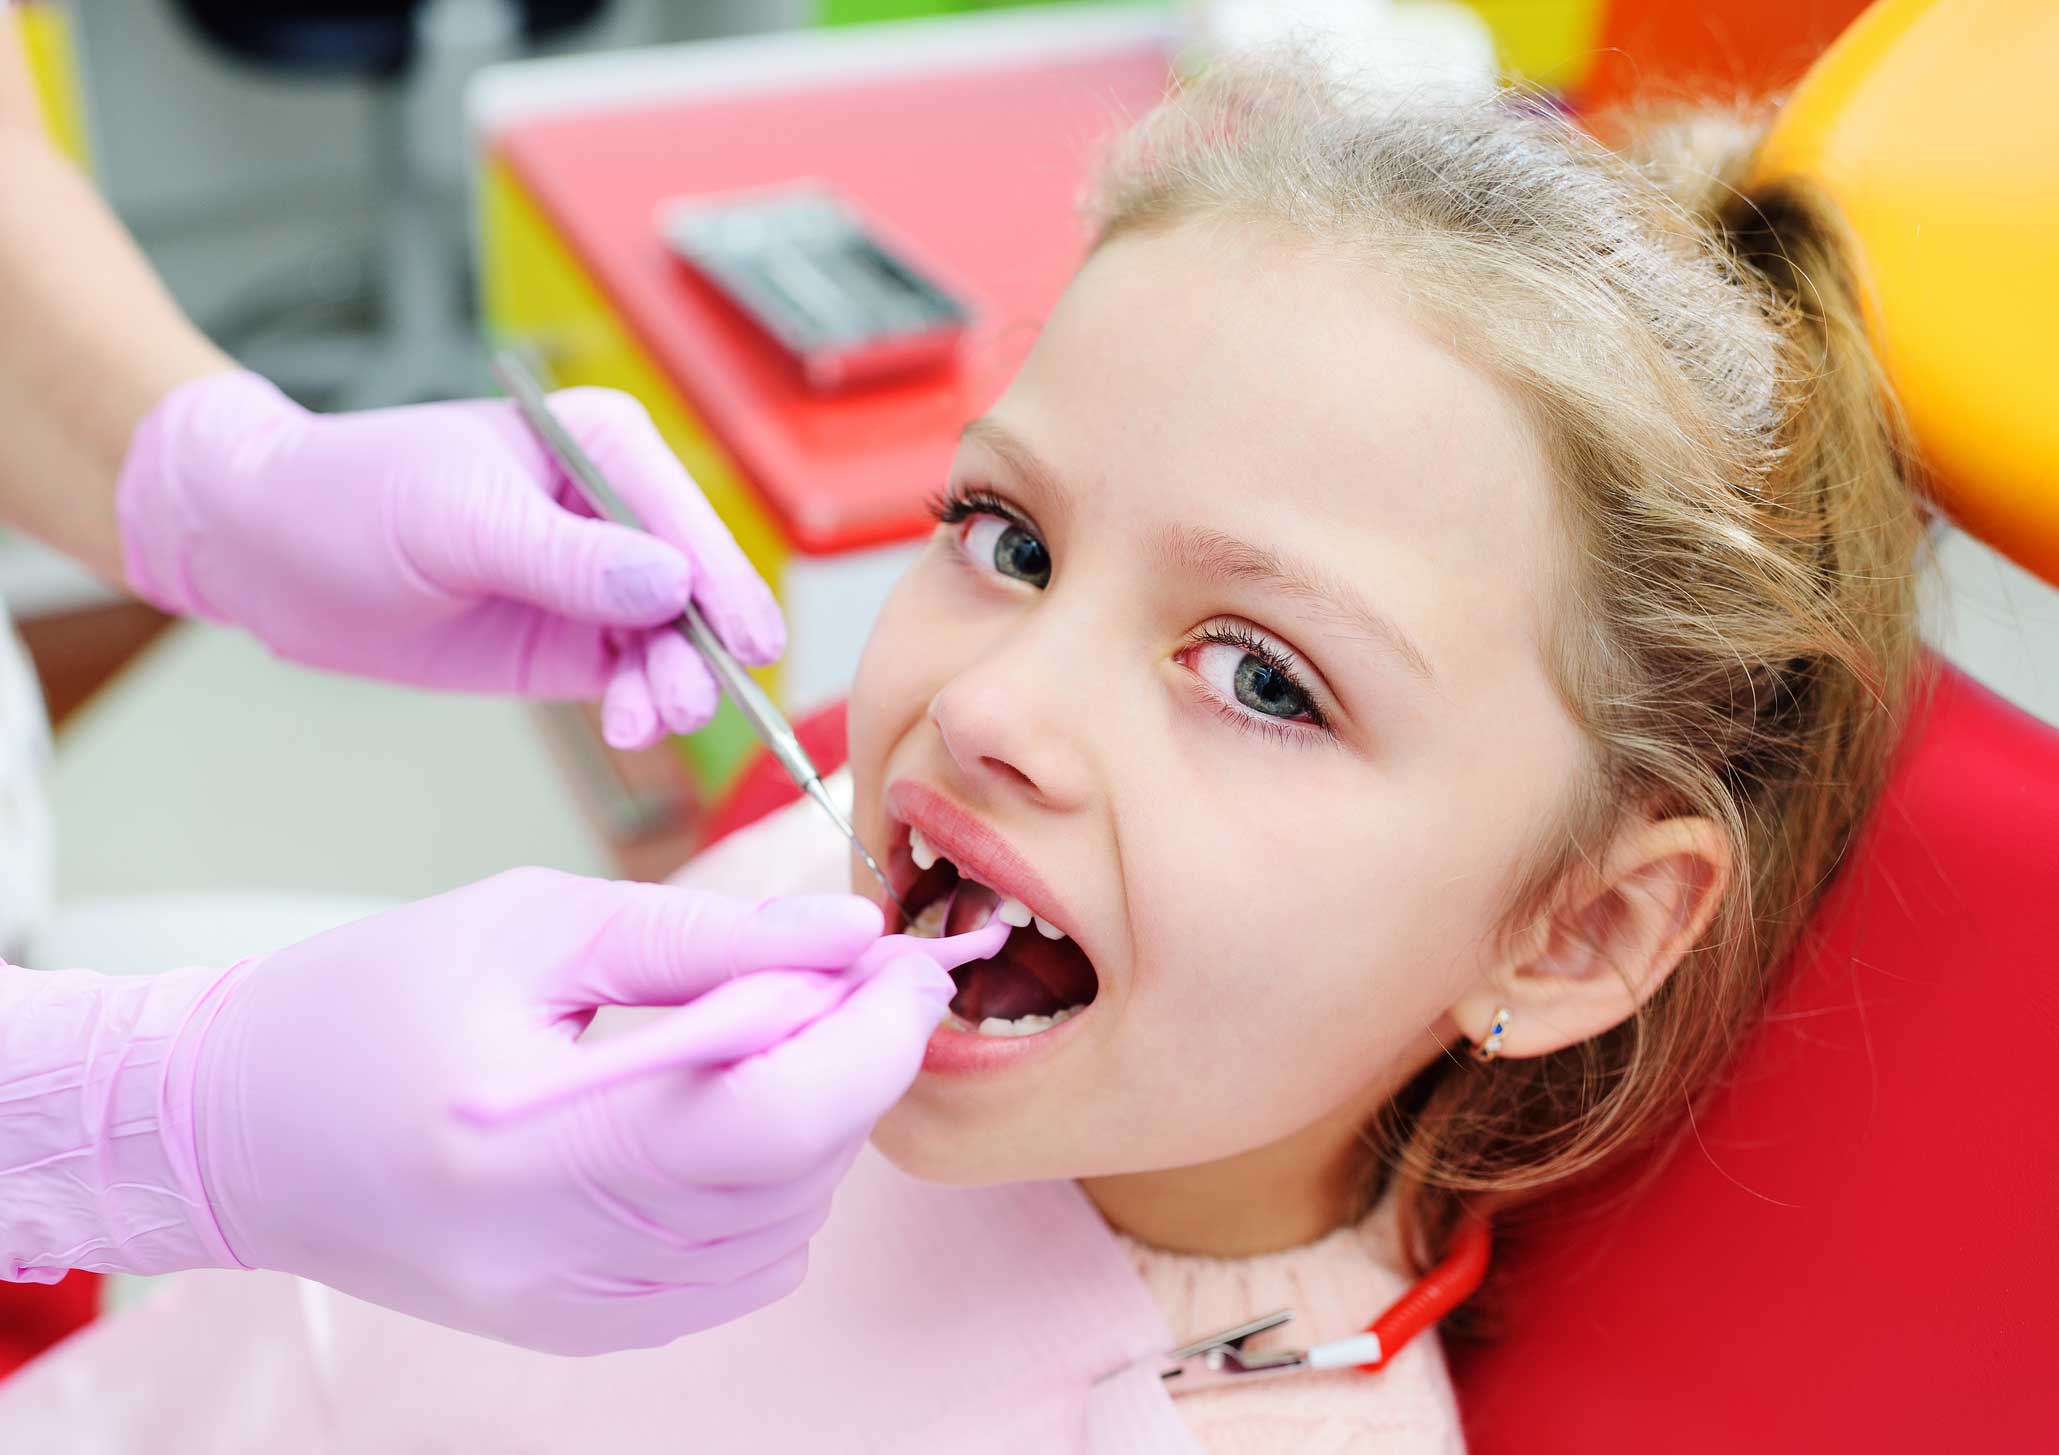 Dental implants kids nashville